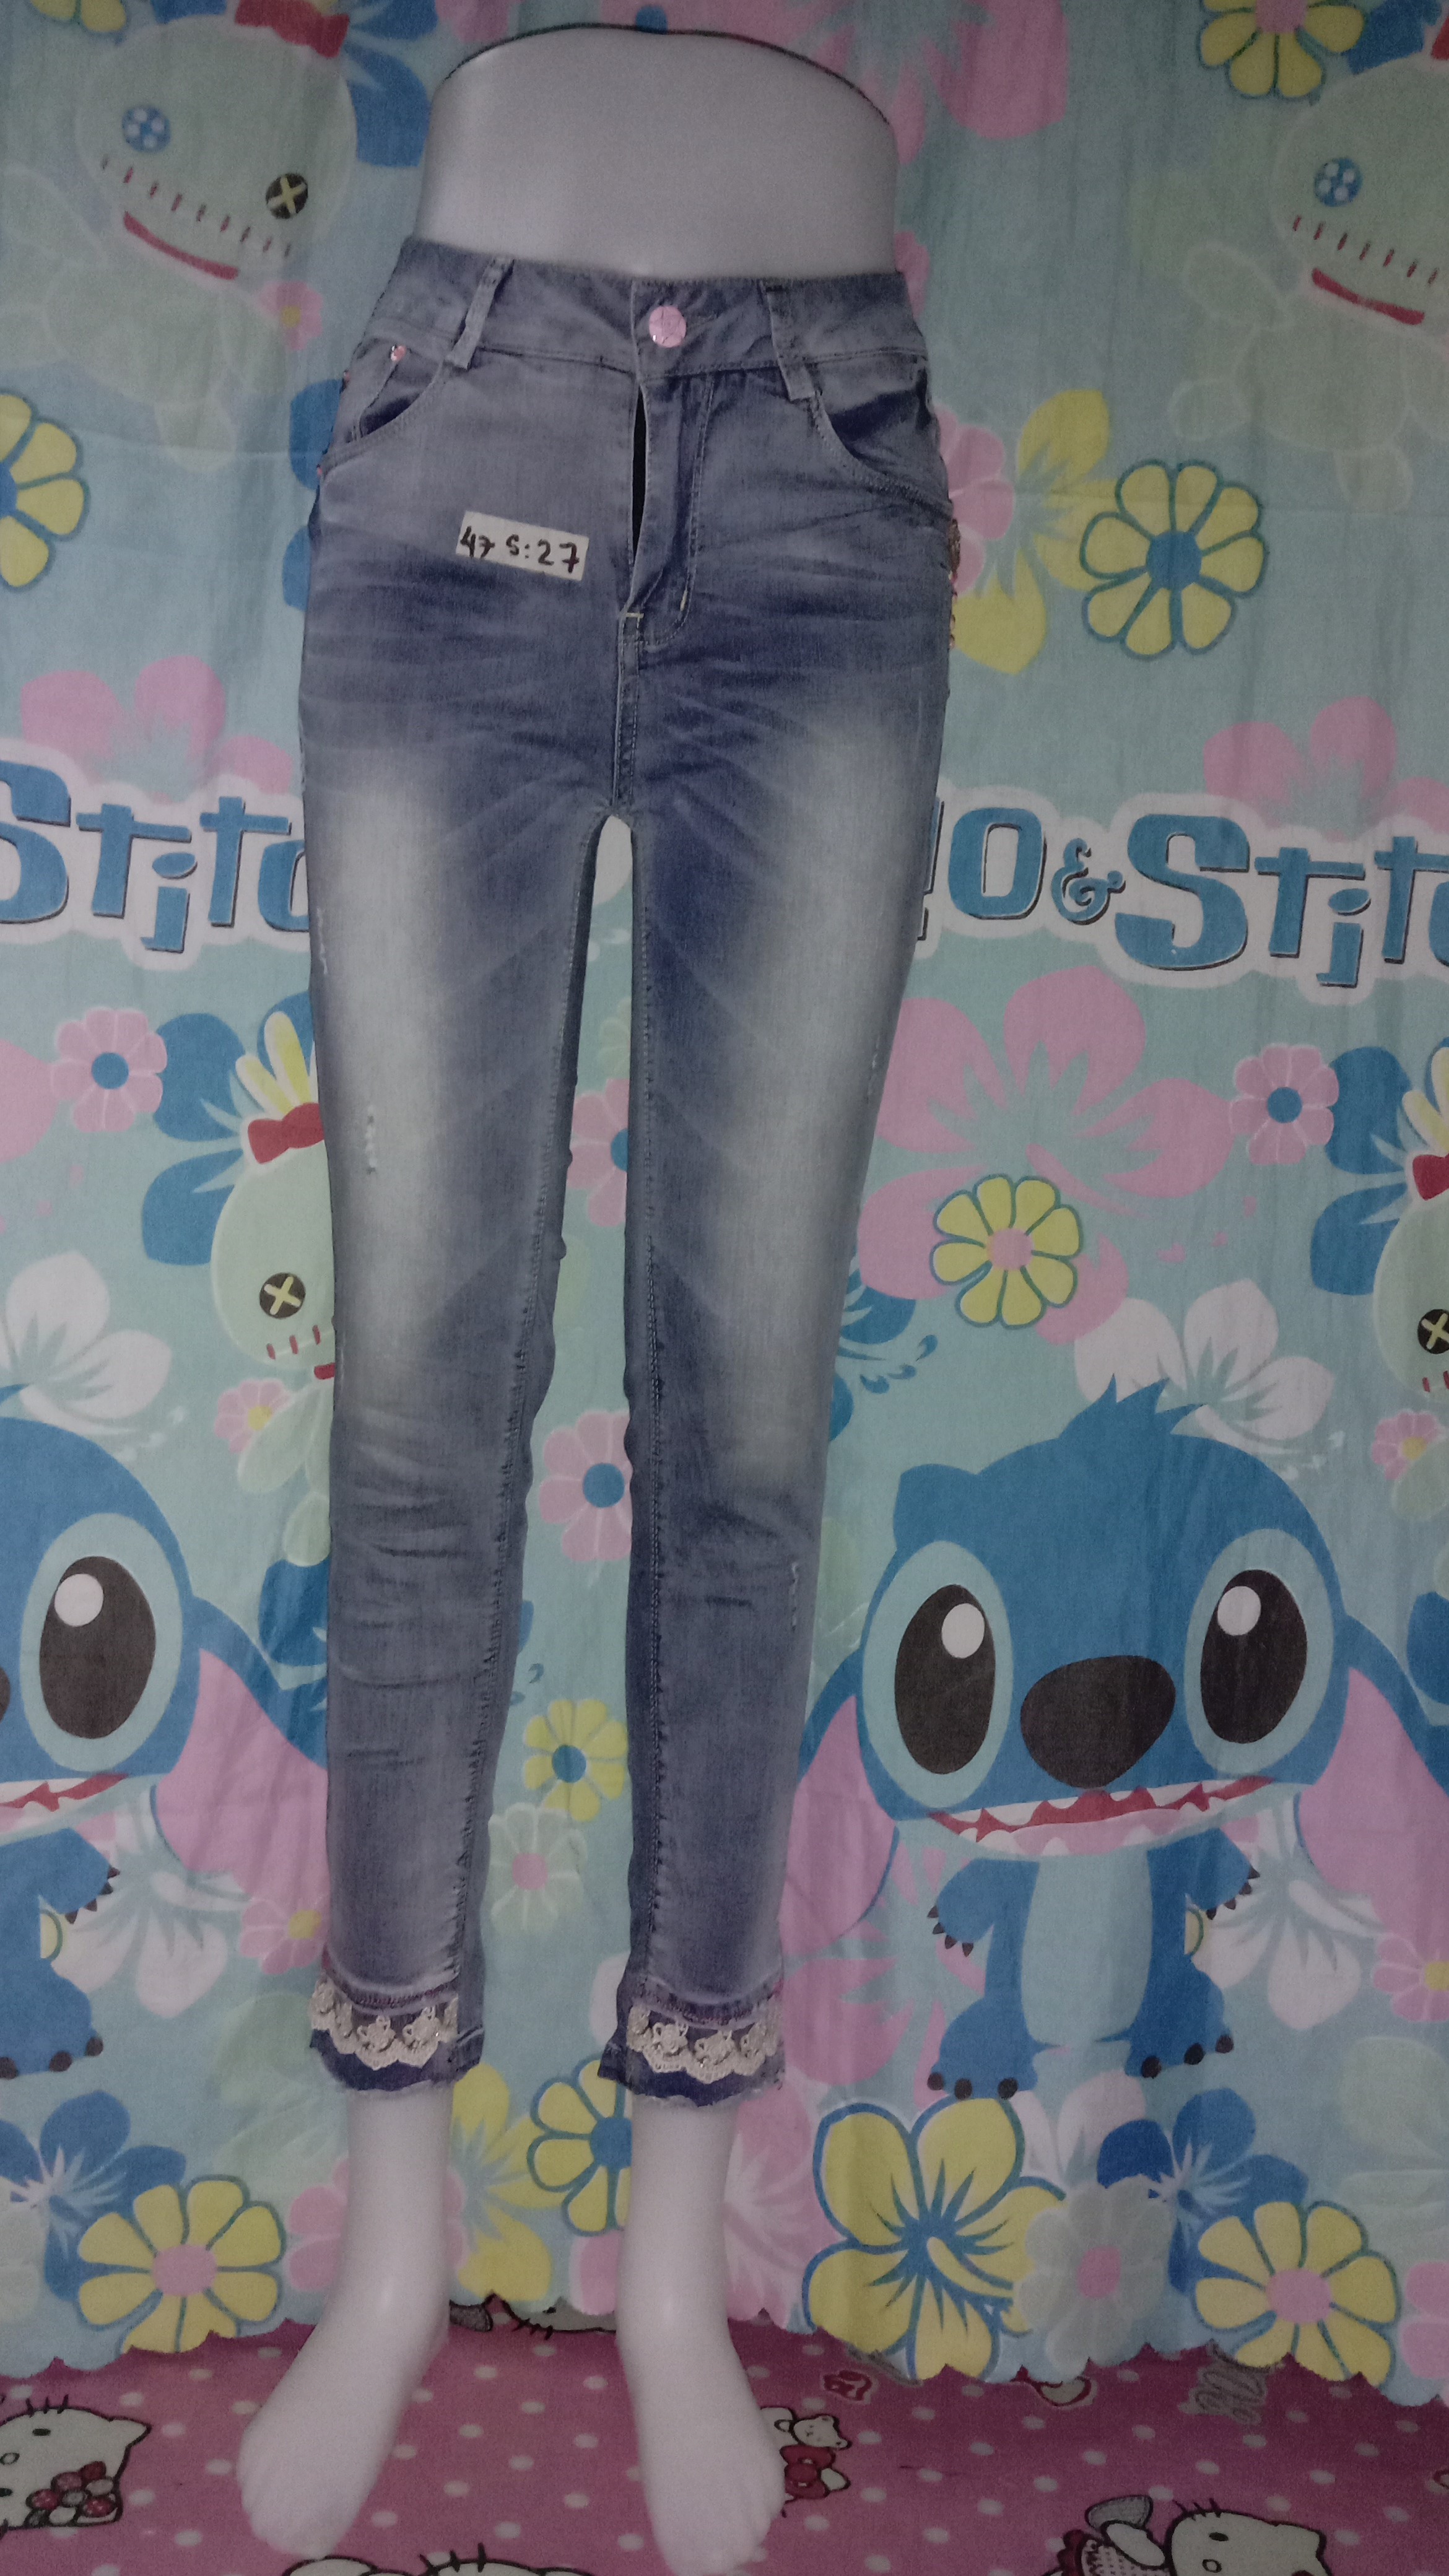 jeans ka size